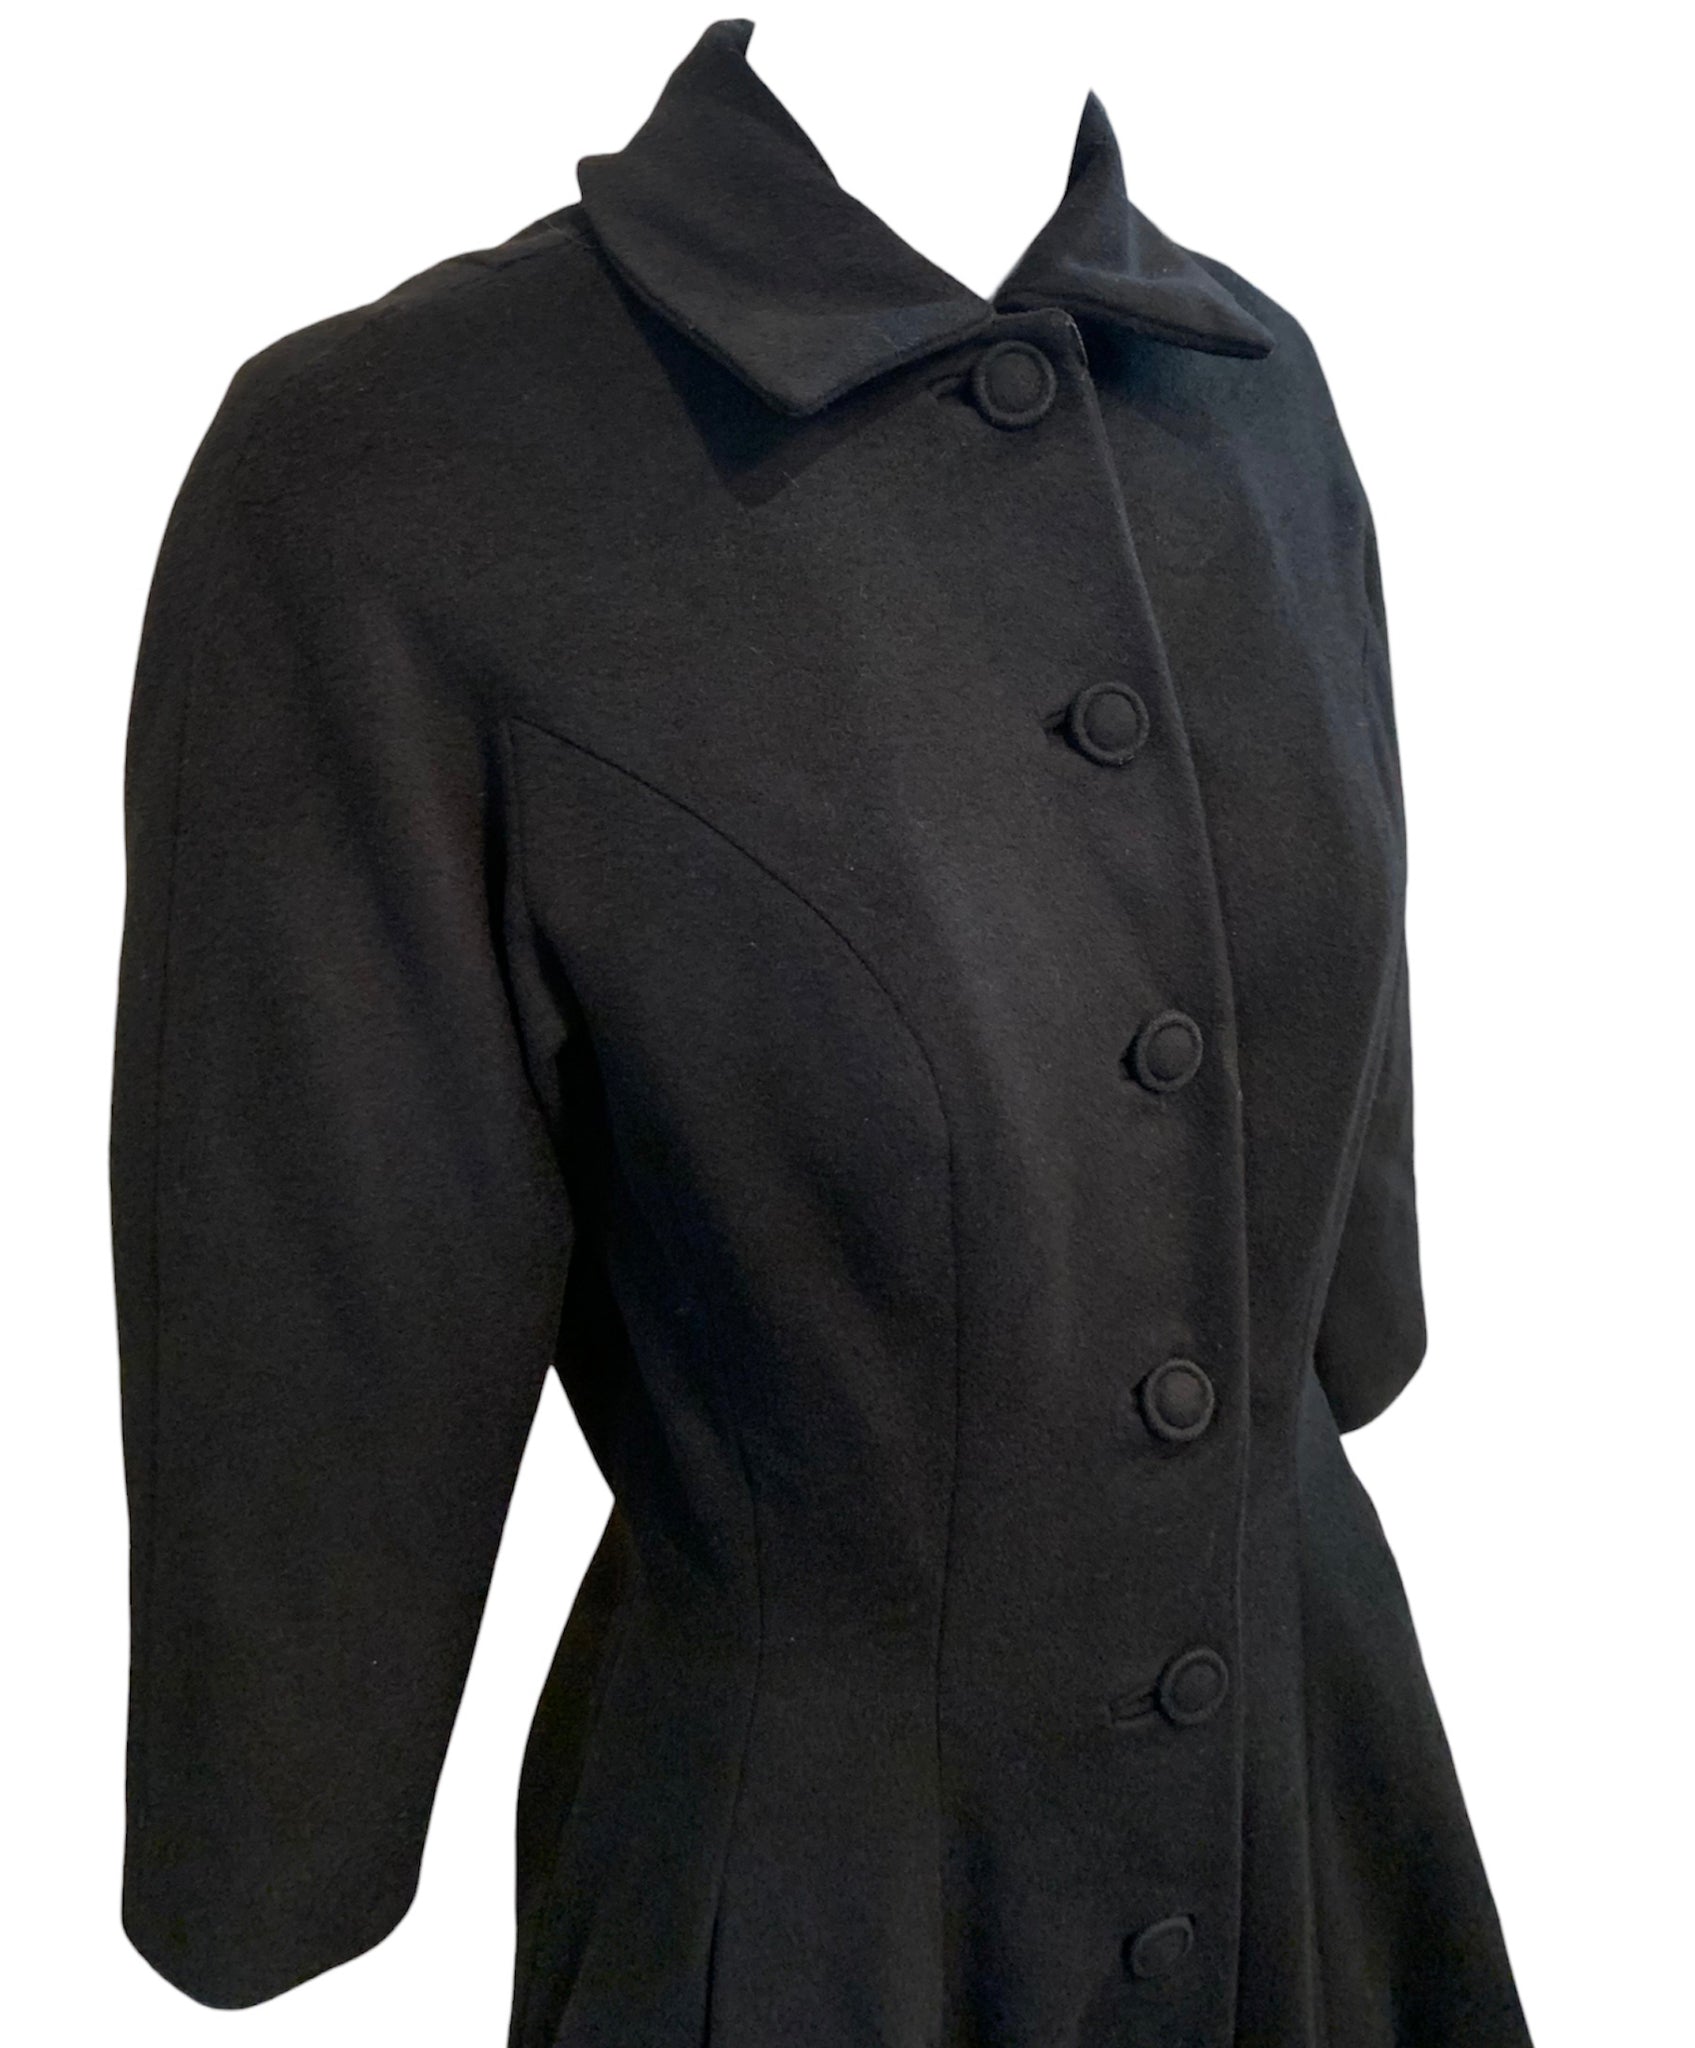 Don Loper 50s Black Wool Fur Trimmed Coat DETAIL 4 of 6